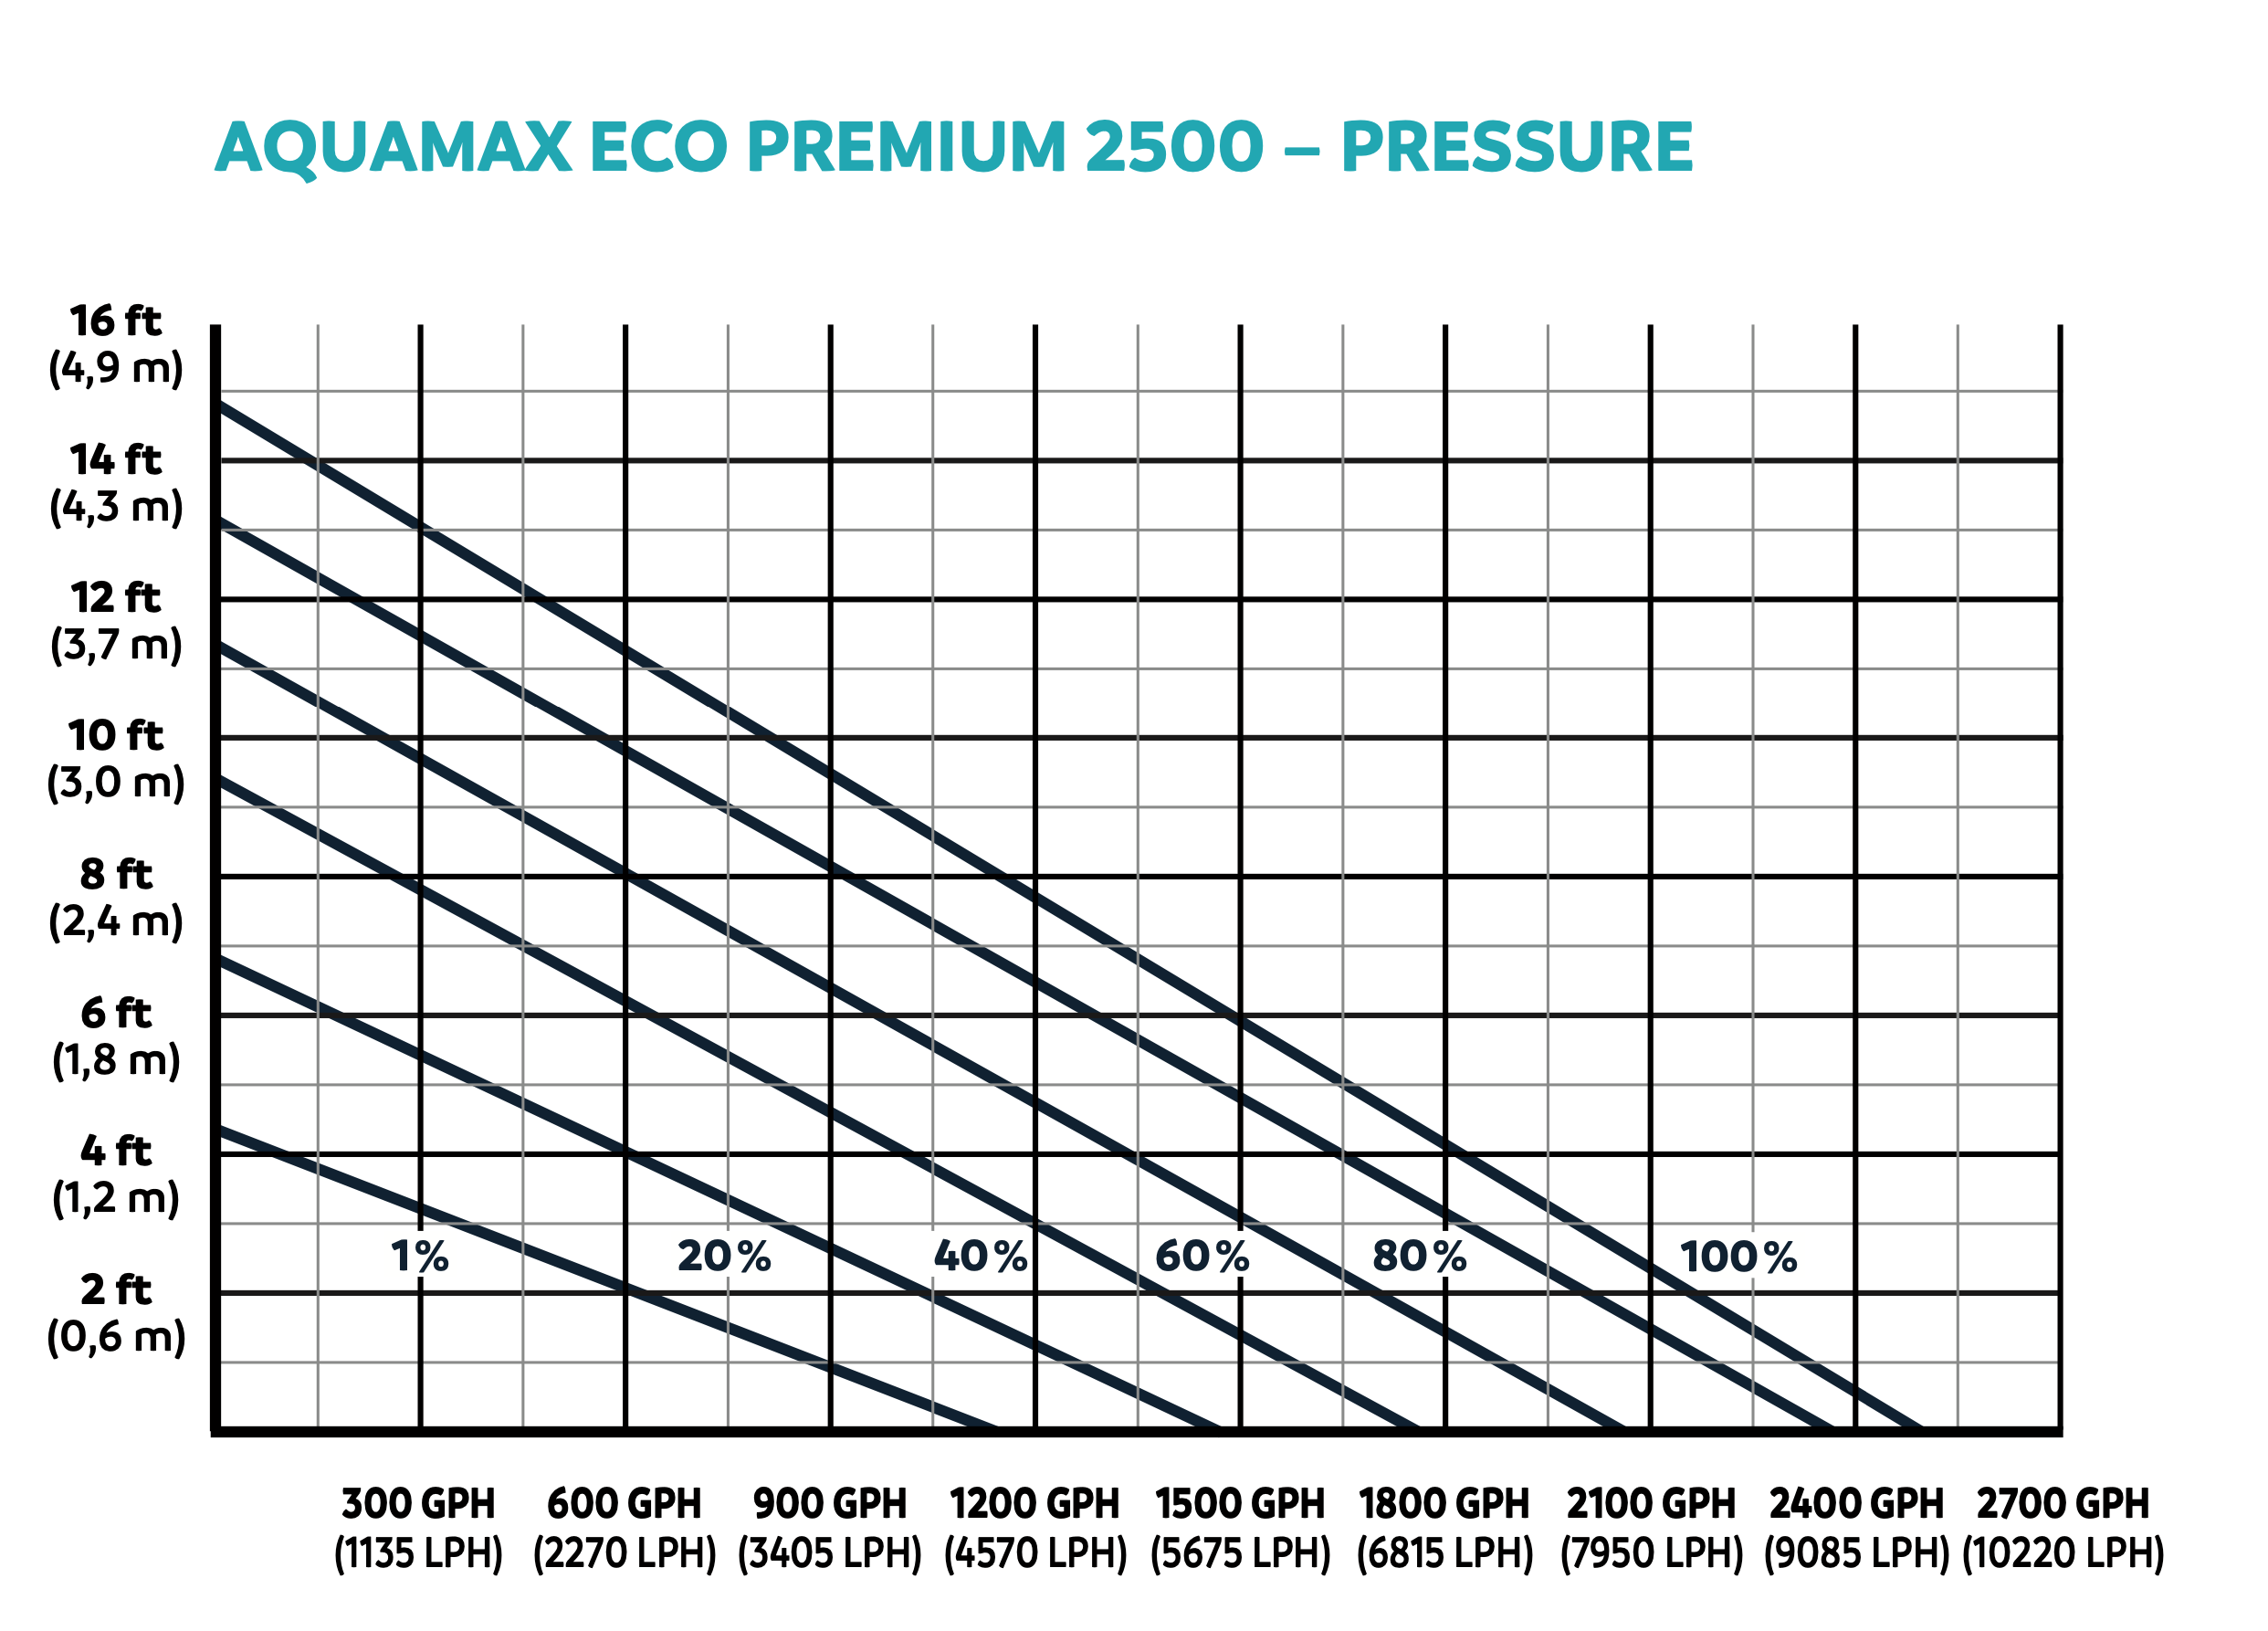 AquaMax Eco Premium 2500